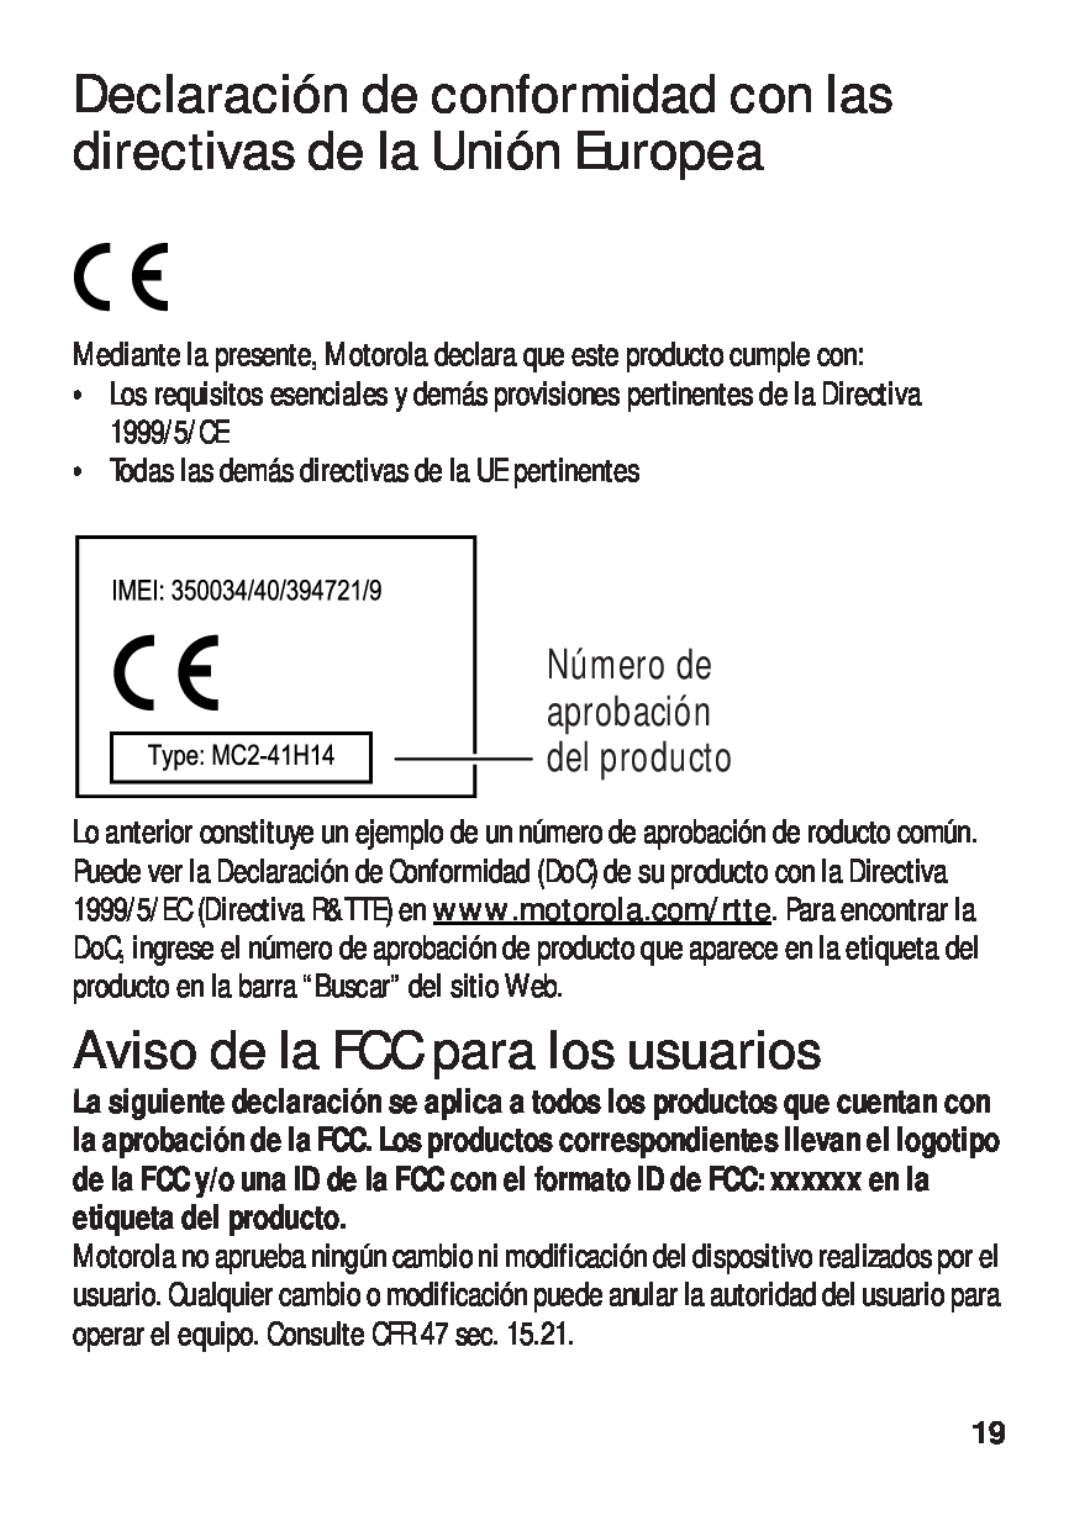 Motorola TX500 manual Aviso de la FCC para los usuarios, Número de aprobación del producto 